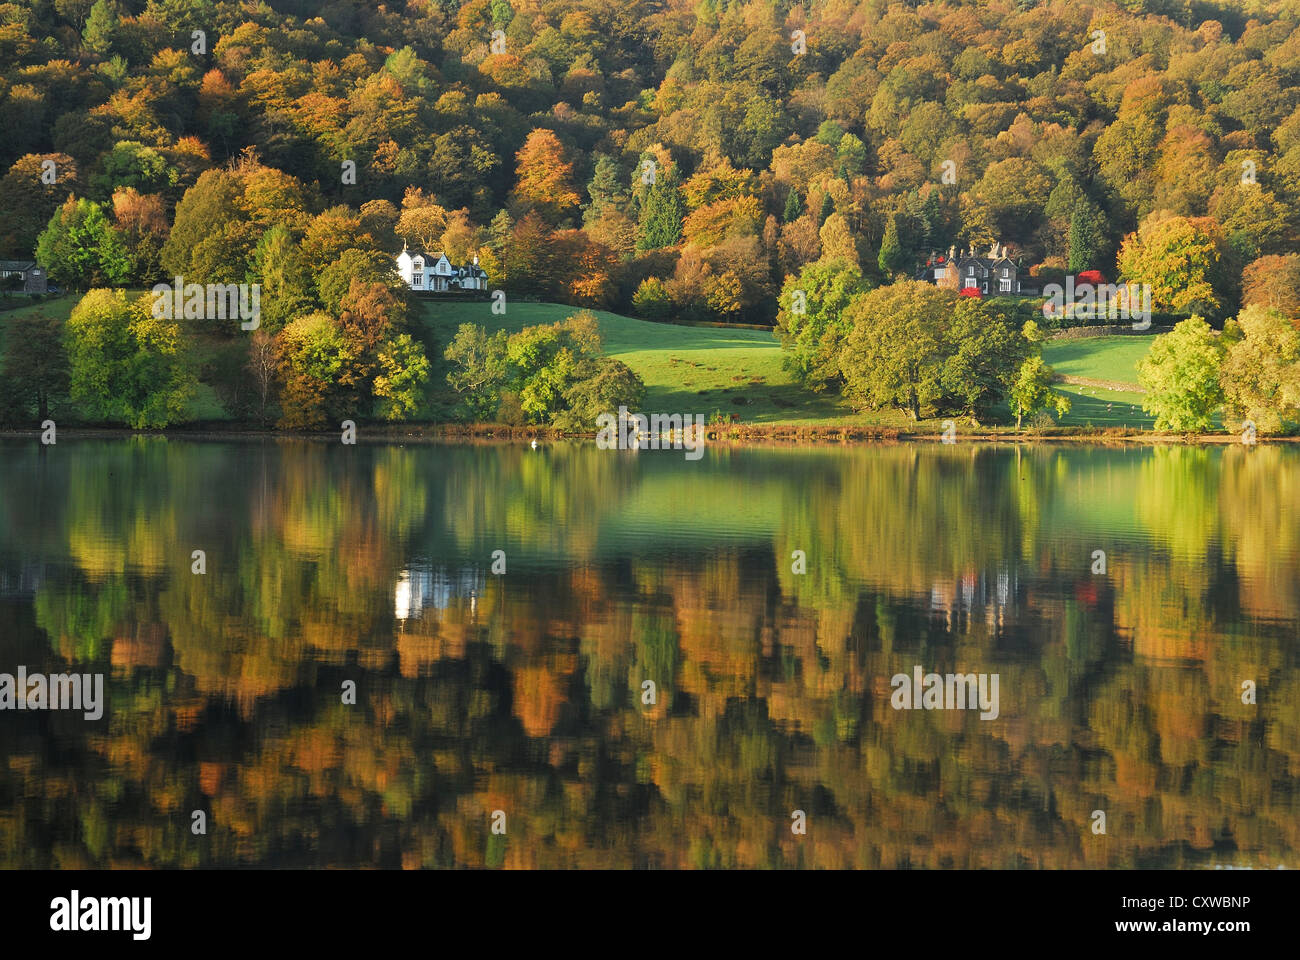 Lake District couleurs d'automne. Arbres se reflétant dans la surface calme de Grasmere sur un matin d'automne. Banque D'Images